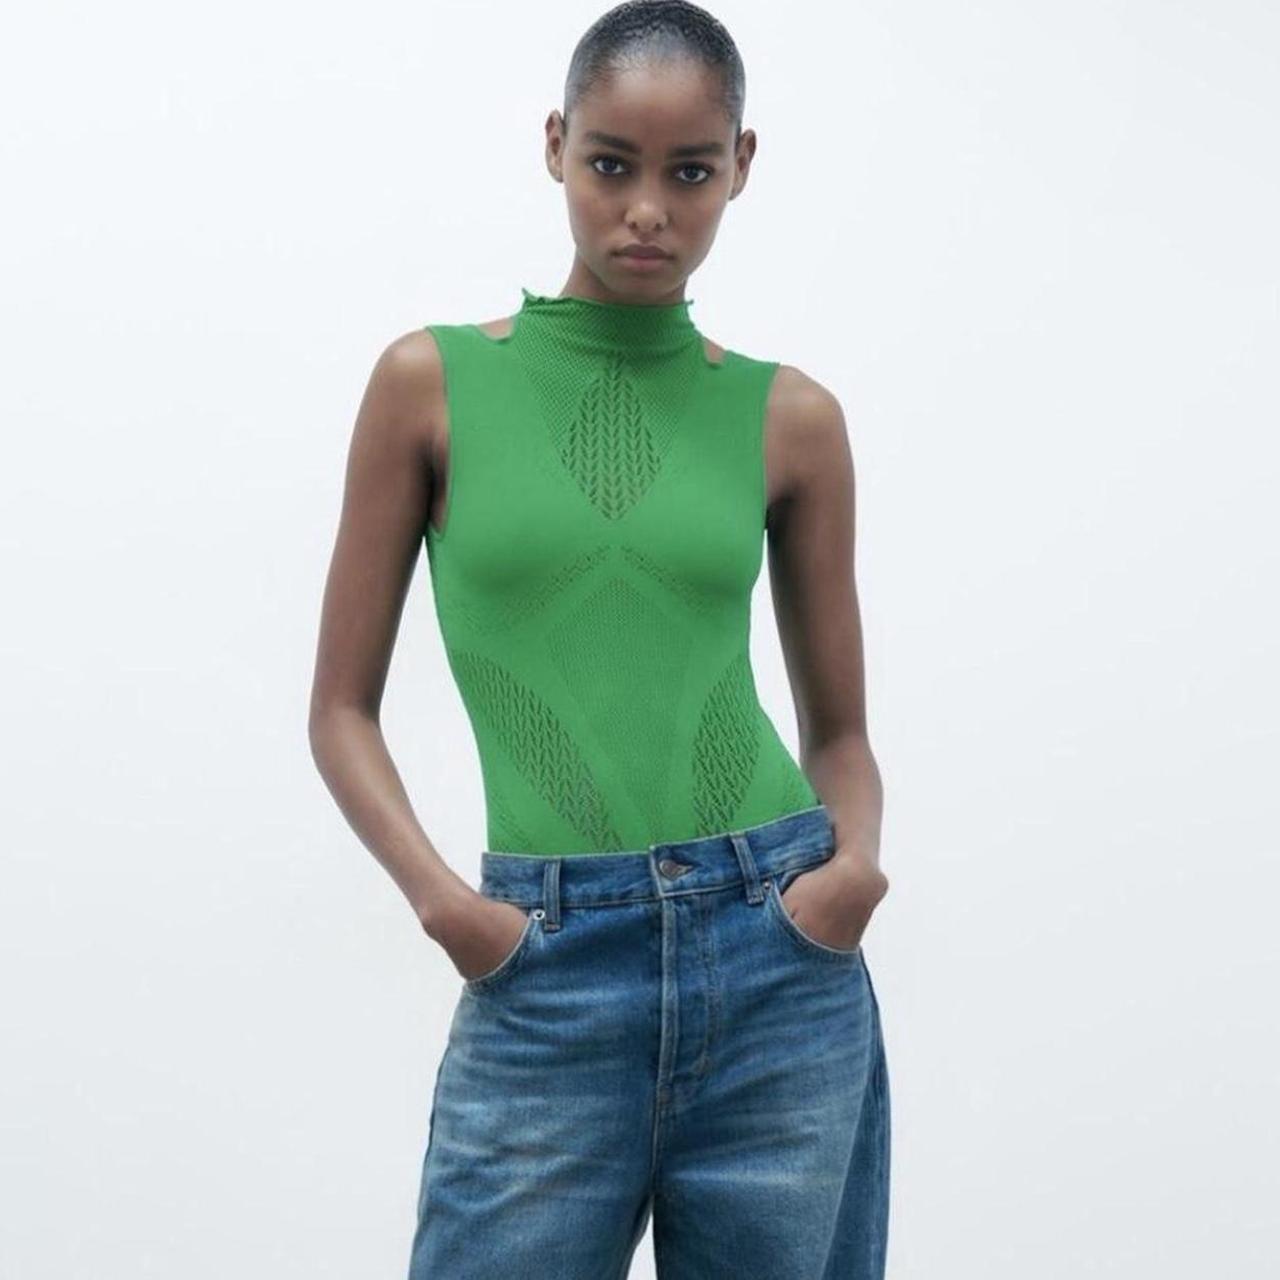 New Zara Jumpsuit Limitless Contour Collection Size M-L